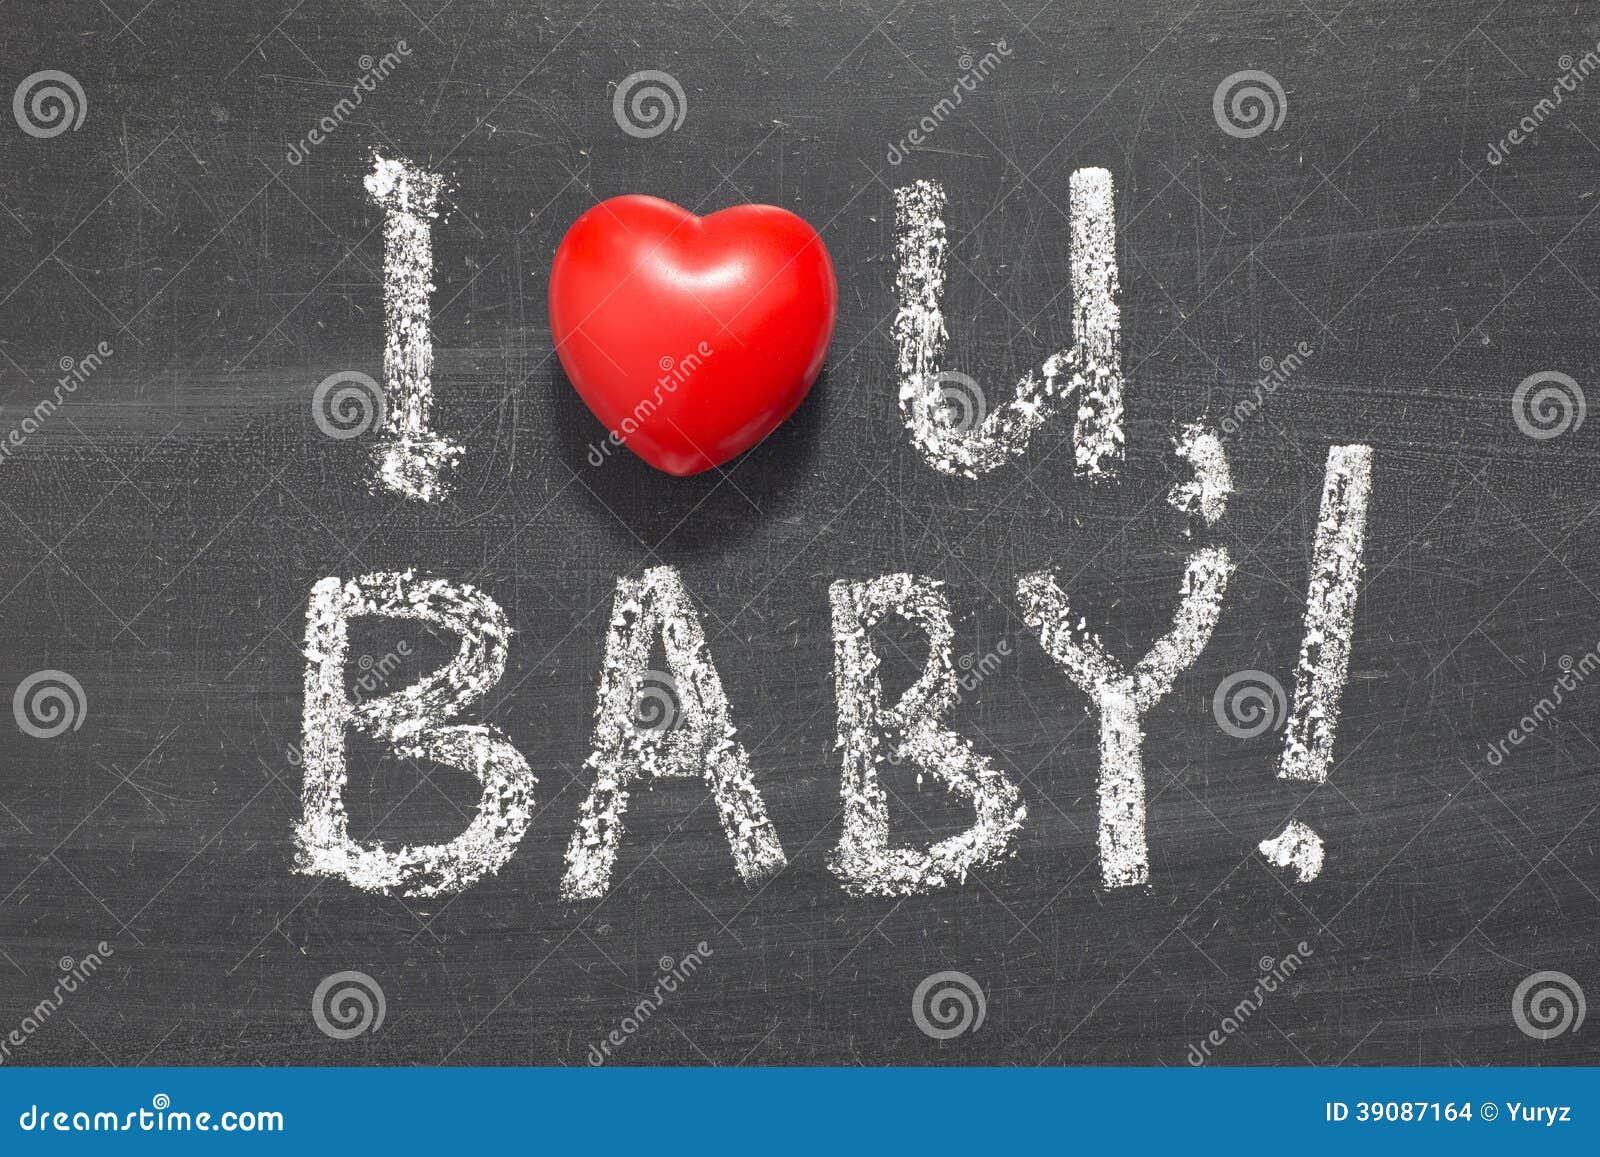 Лов зе ю. Ай лов ю Беби. I Love you Baby картинки. I Love you Baby рисунок. Надписи i Love you Бэйби.